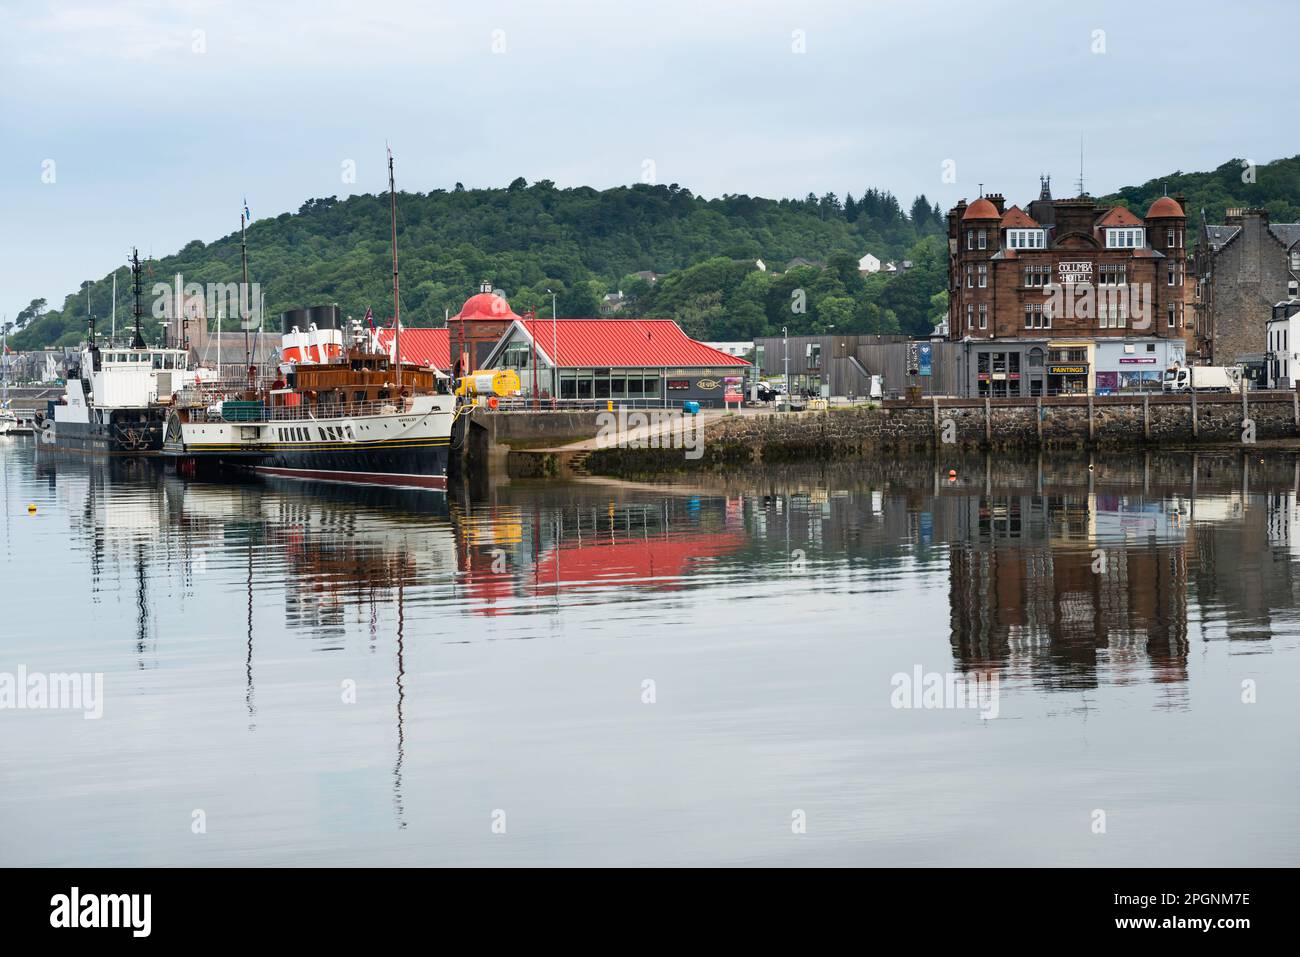 Argyll Ecosse. Bateau à aubes Waverley amarré dans le port d'Oban avec la ville et des bateaux de pêche Banque D'Images